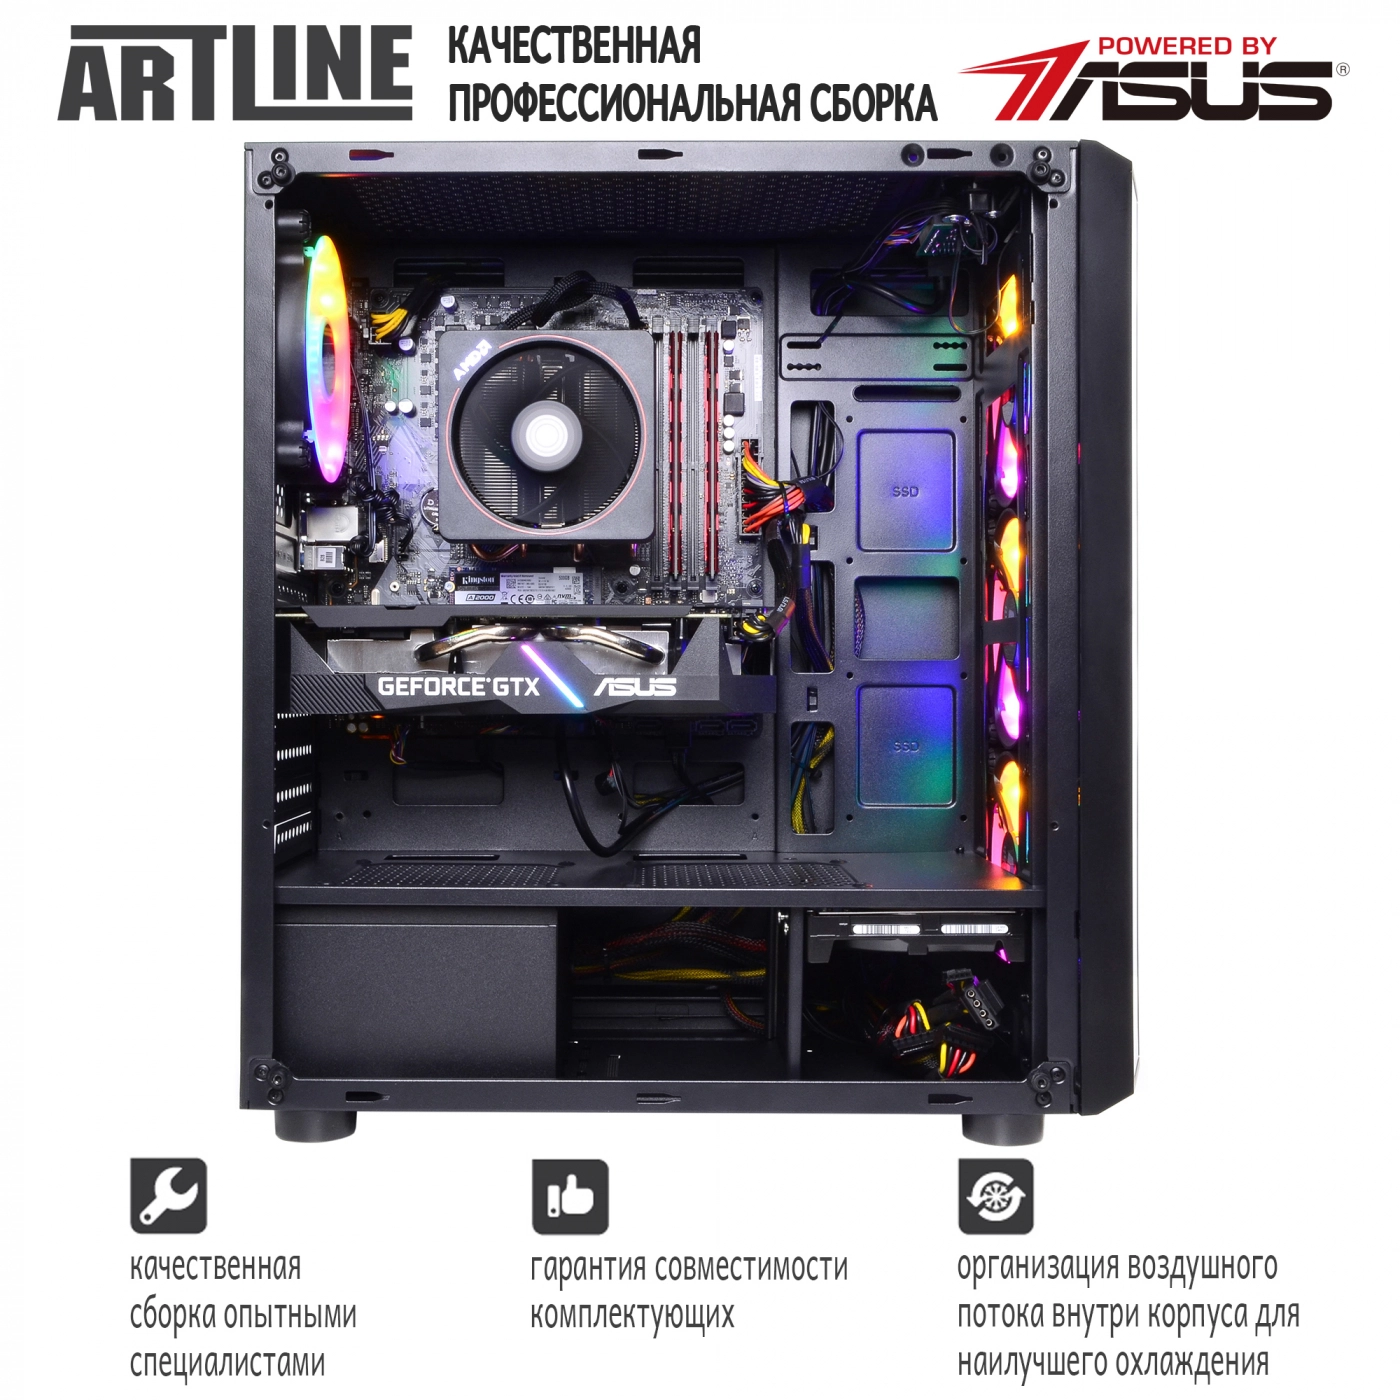 Купить Компьютер ARTLINE Gaming X47v40 - фото 8